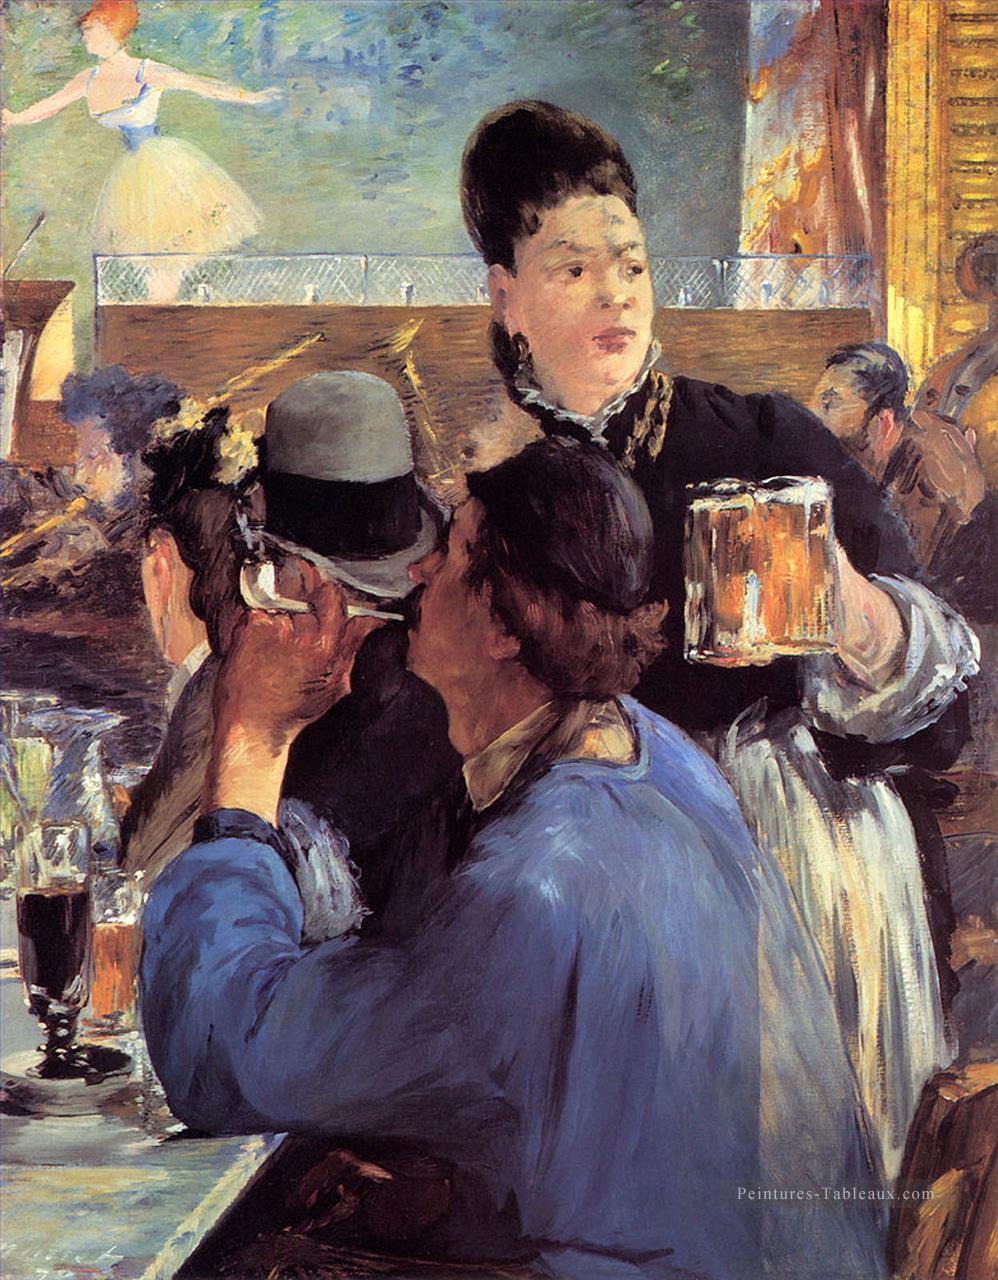 Coin d’un caféConcert réalisme impressionnisme Édouard Manet Peintures à l'huile